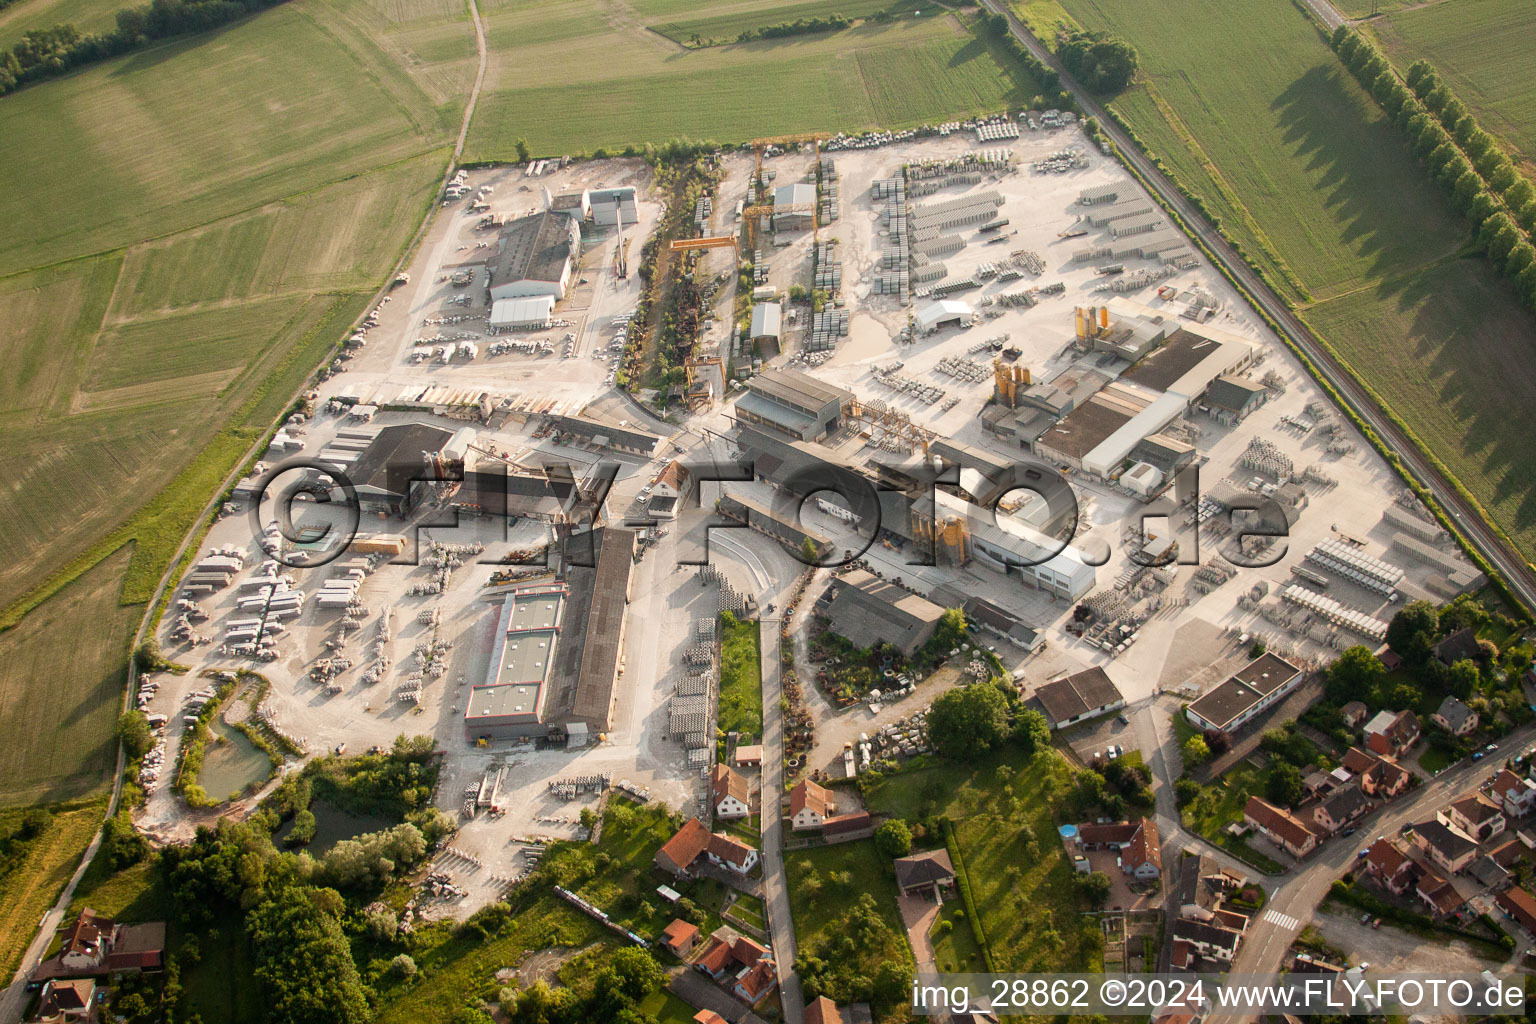 Industrial estate and company settlement Betonbau Stradal in Kilstett in Grand Est, France